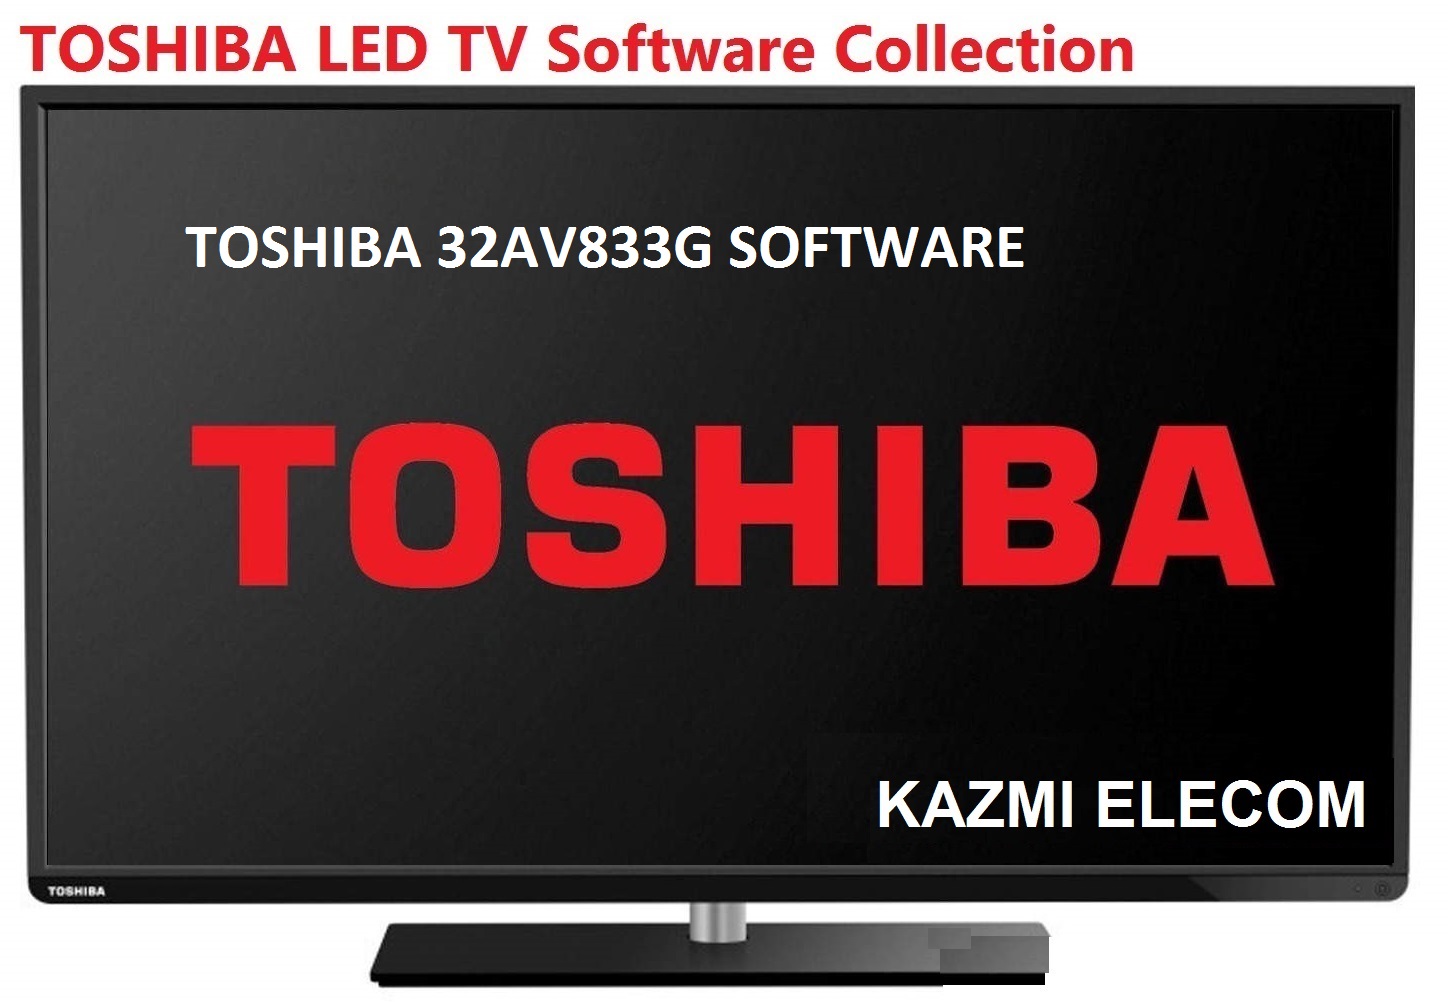 Toshiba 32Av833G